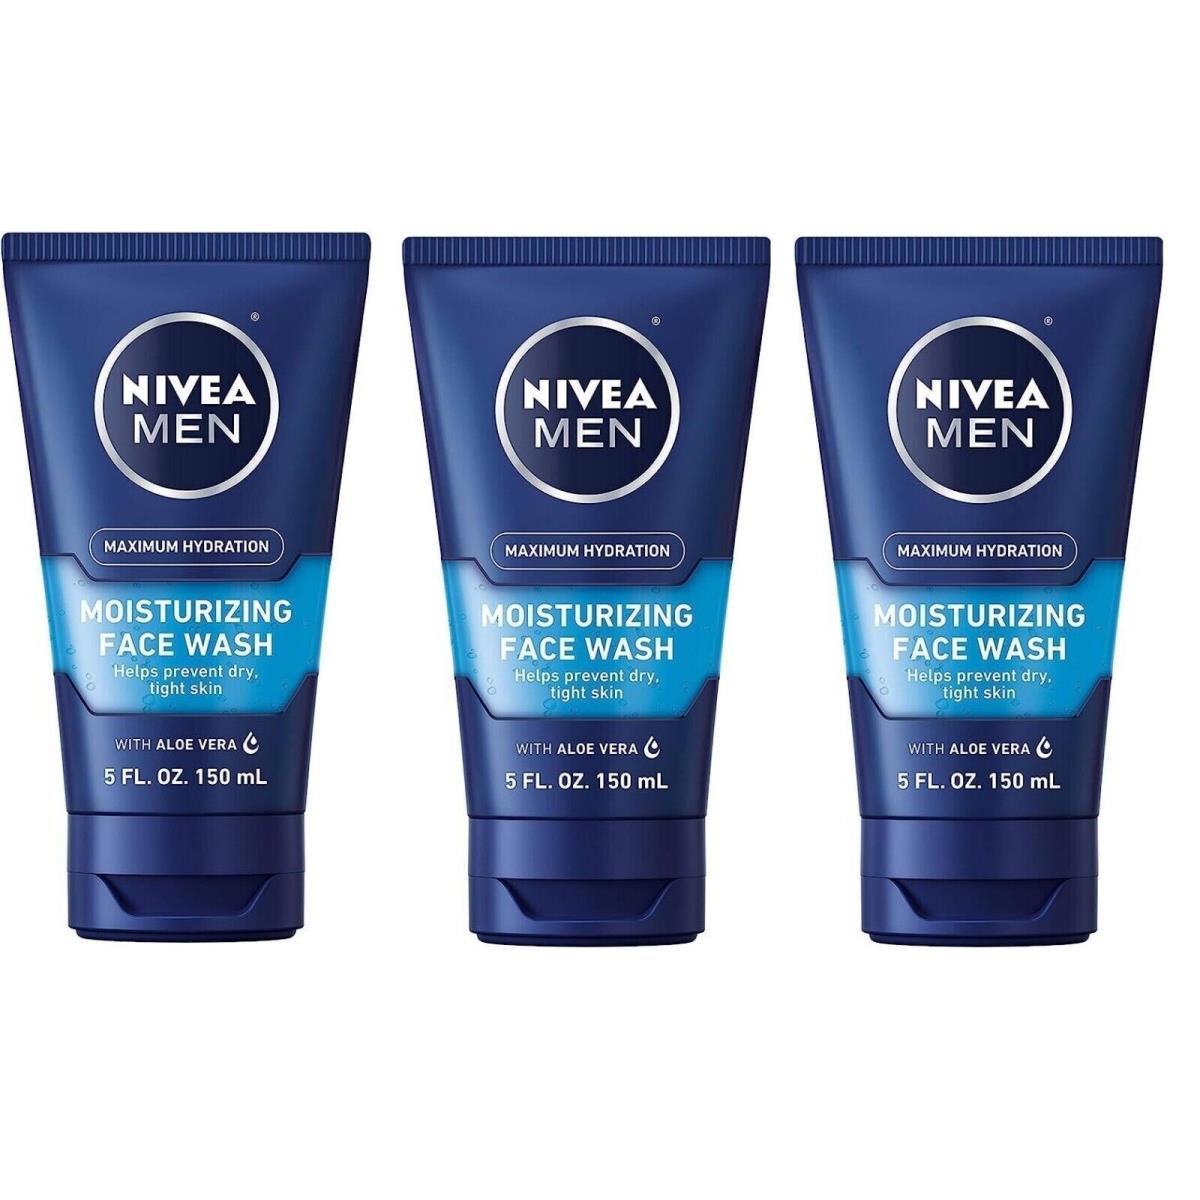 Nivea Men Moisturizing Face Wash 5 oz X 3 Packs